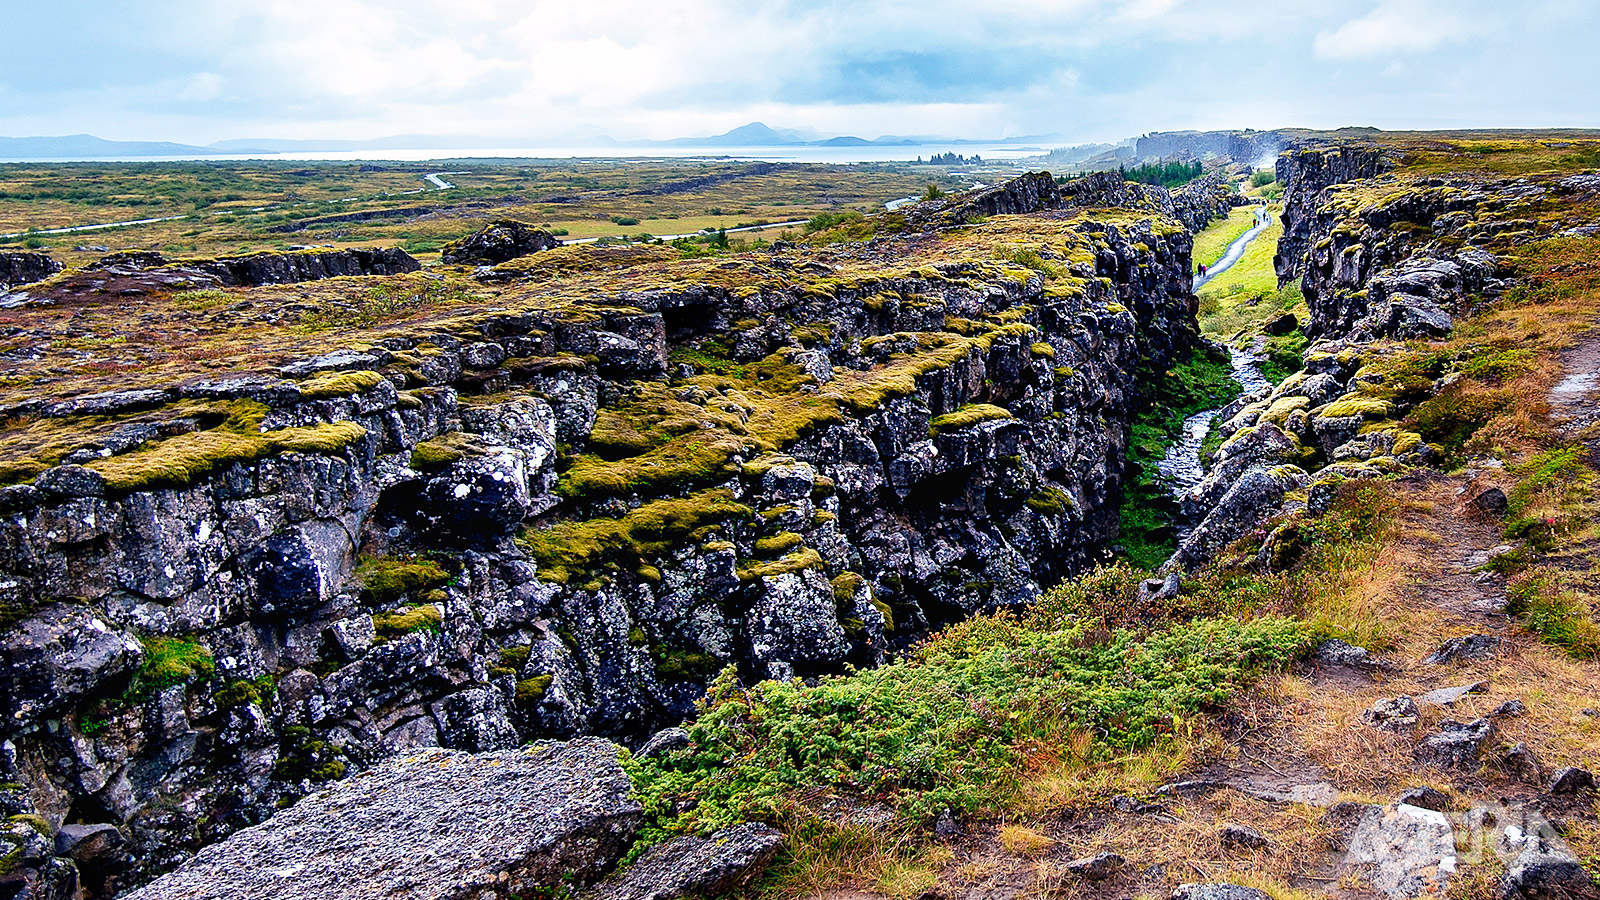 Het Thingvellir-natuurpark is één van de weinige plaatsen ter wereld waar je kan zien hoe de tektonische platen van elkaar wegdrijven